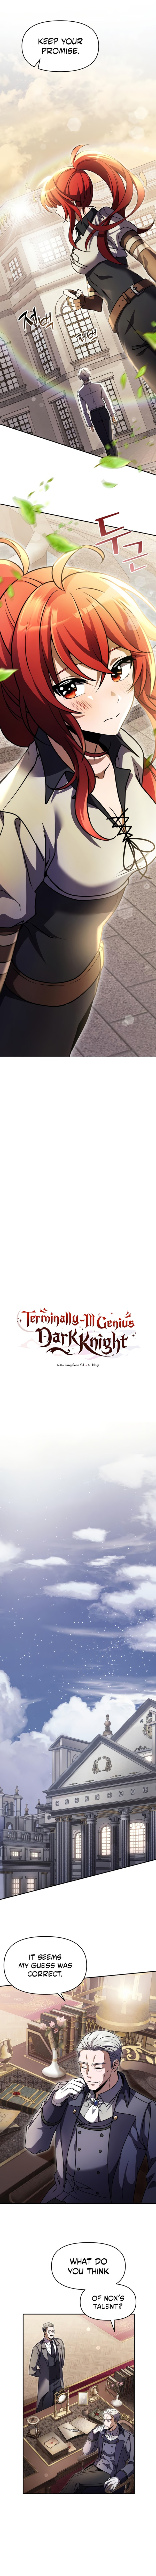 Terminally Ill Genius Dark Knight Chapter 8 Page 6